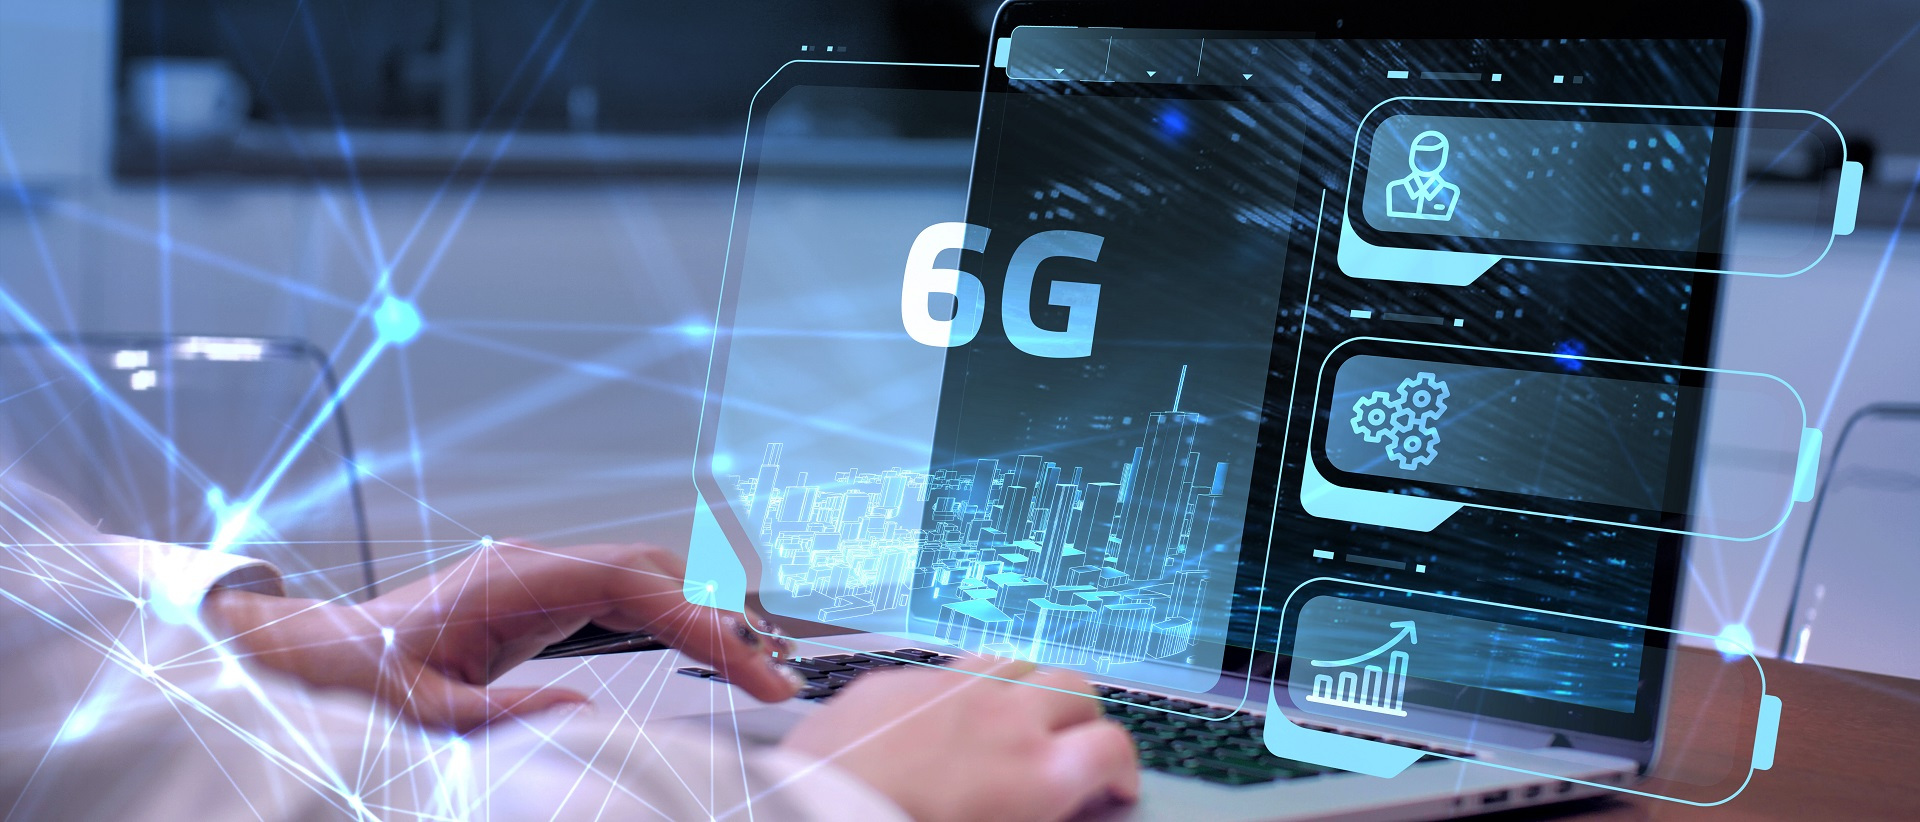 MIT và Ericsson hợp tác nghiên cứu về mạng 5G và 6G thế hệ tiếp theo